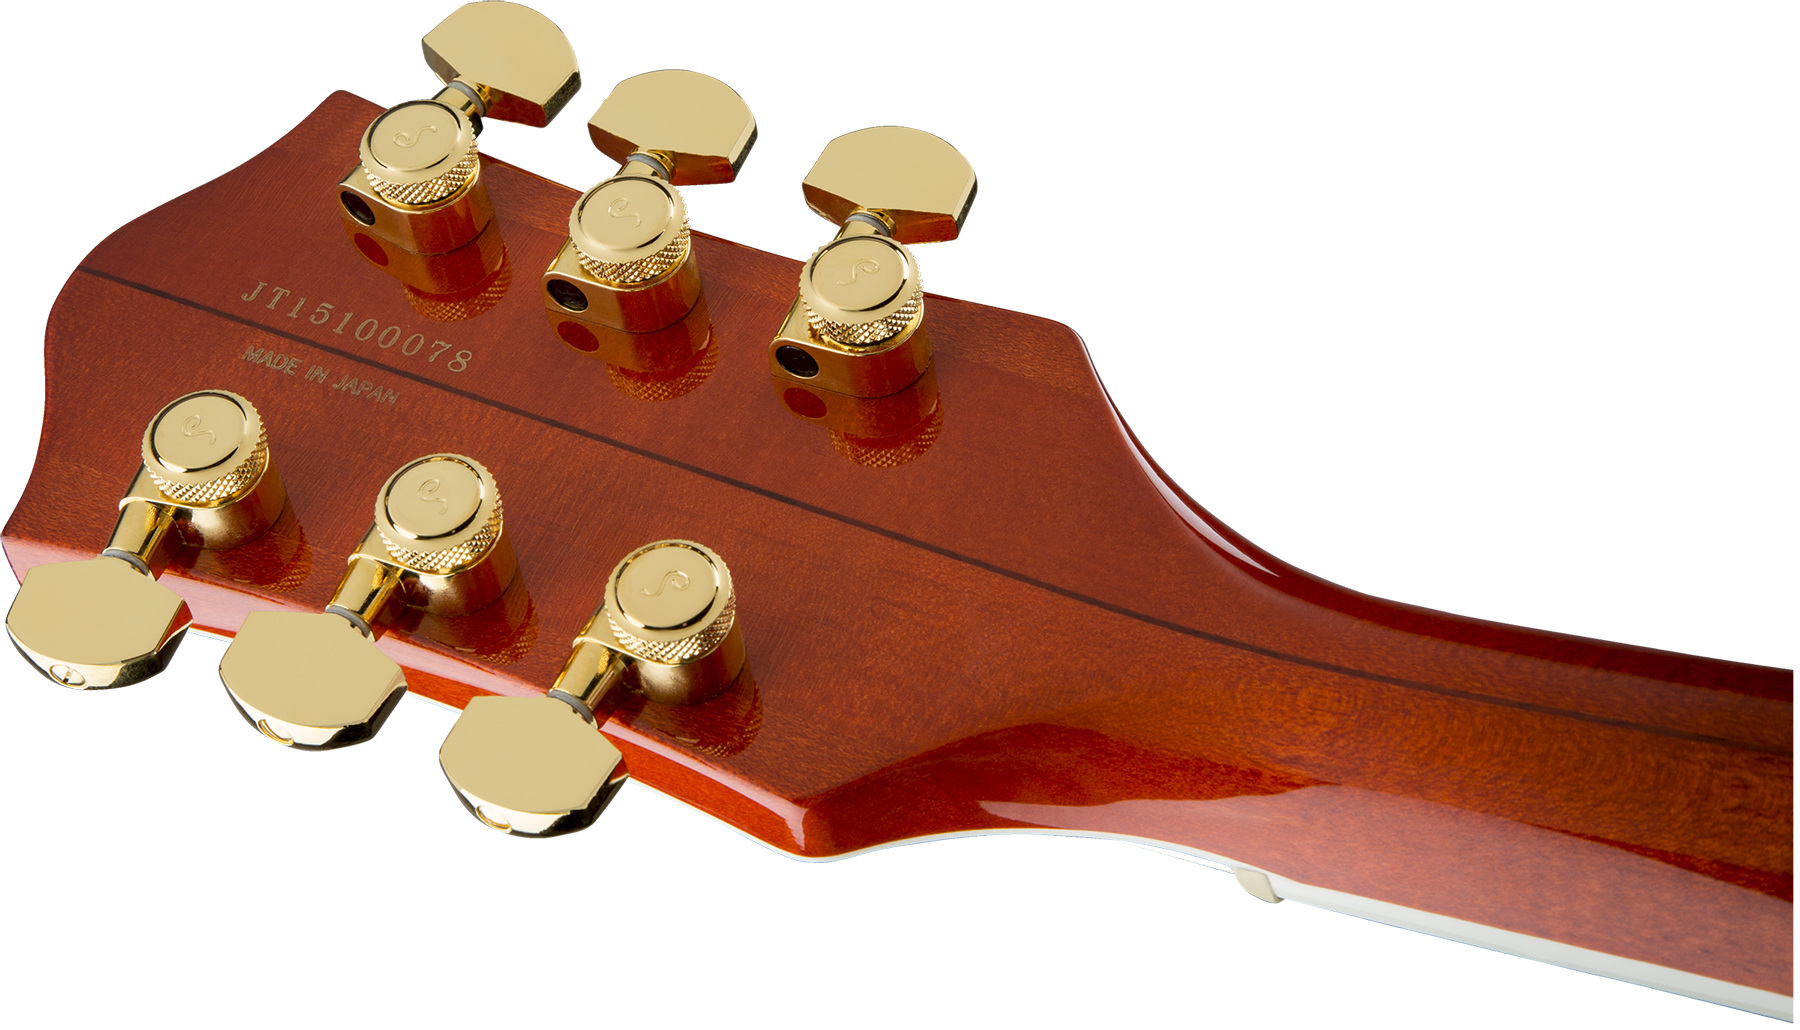 Gretsch G6120tfm Players Edition Nashville Pro Jap Bigsby Eb - Orange Stain - Guitare Électrique 1/2 Caisse - Variation 3